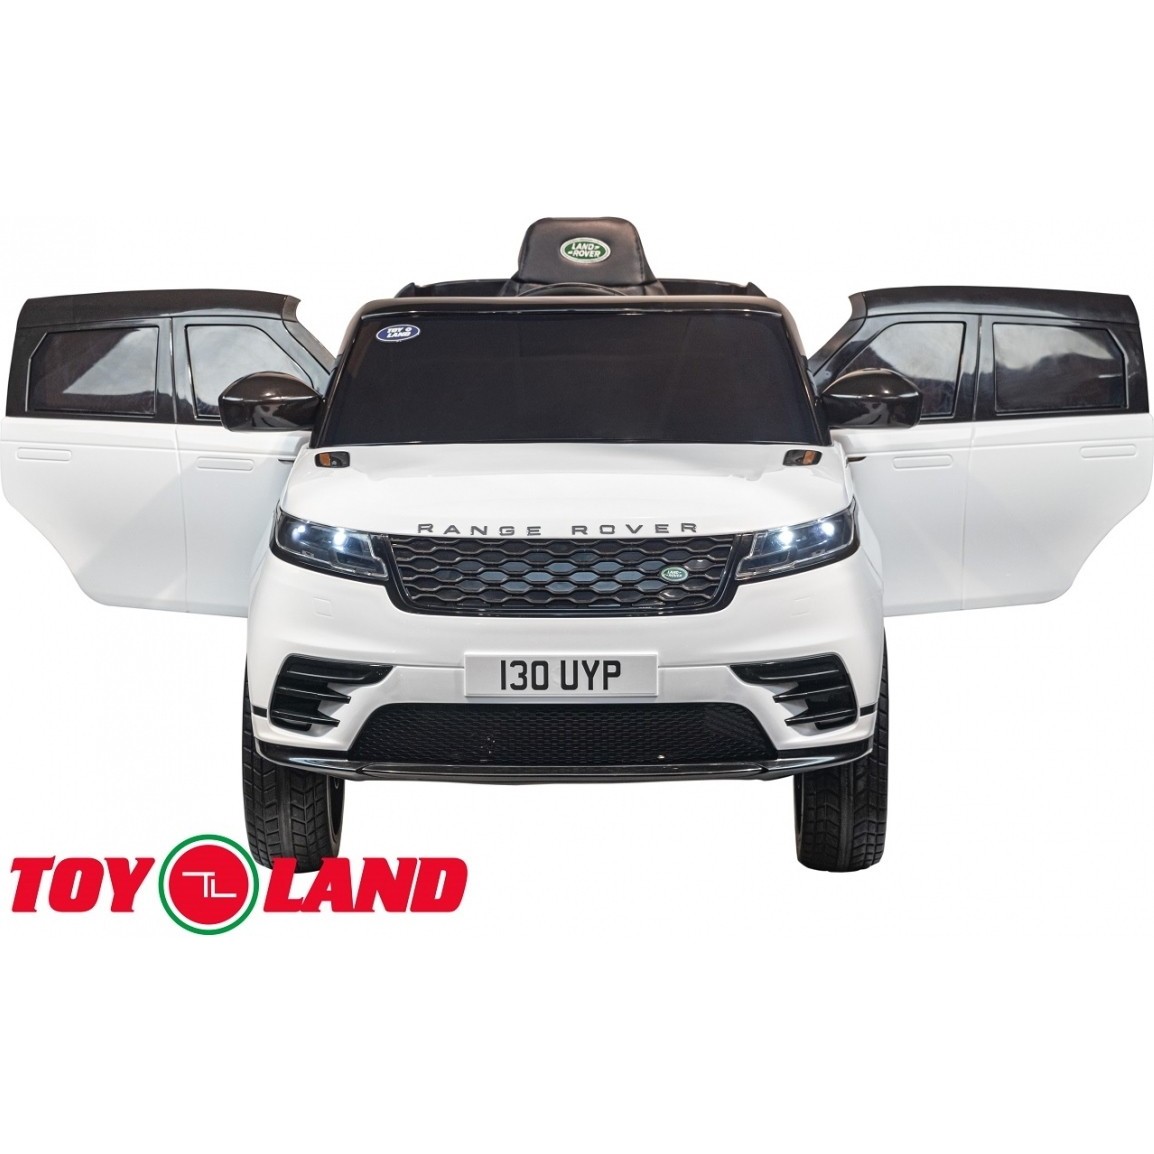 Детский электромобиль Toy Land Range Rover Velar (синий)